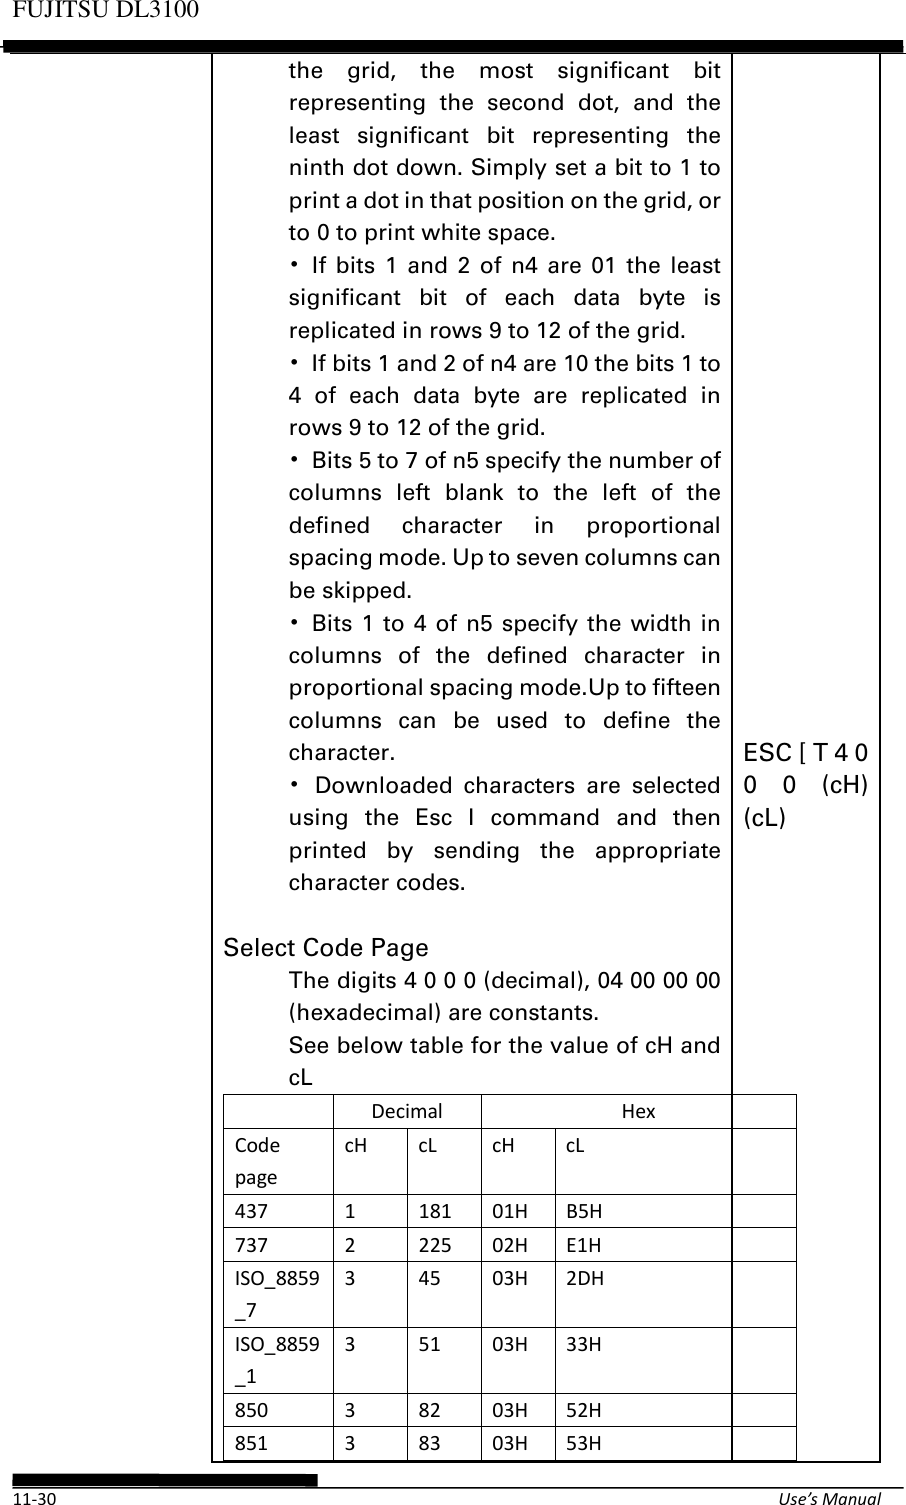 Page 58 of Fujitsu Isotec 021M33342A Dot Matrix Printer User Manual Part 2 of 2